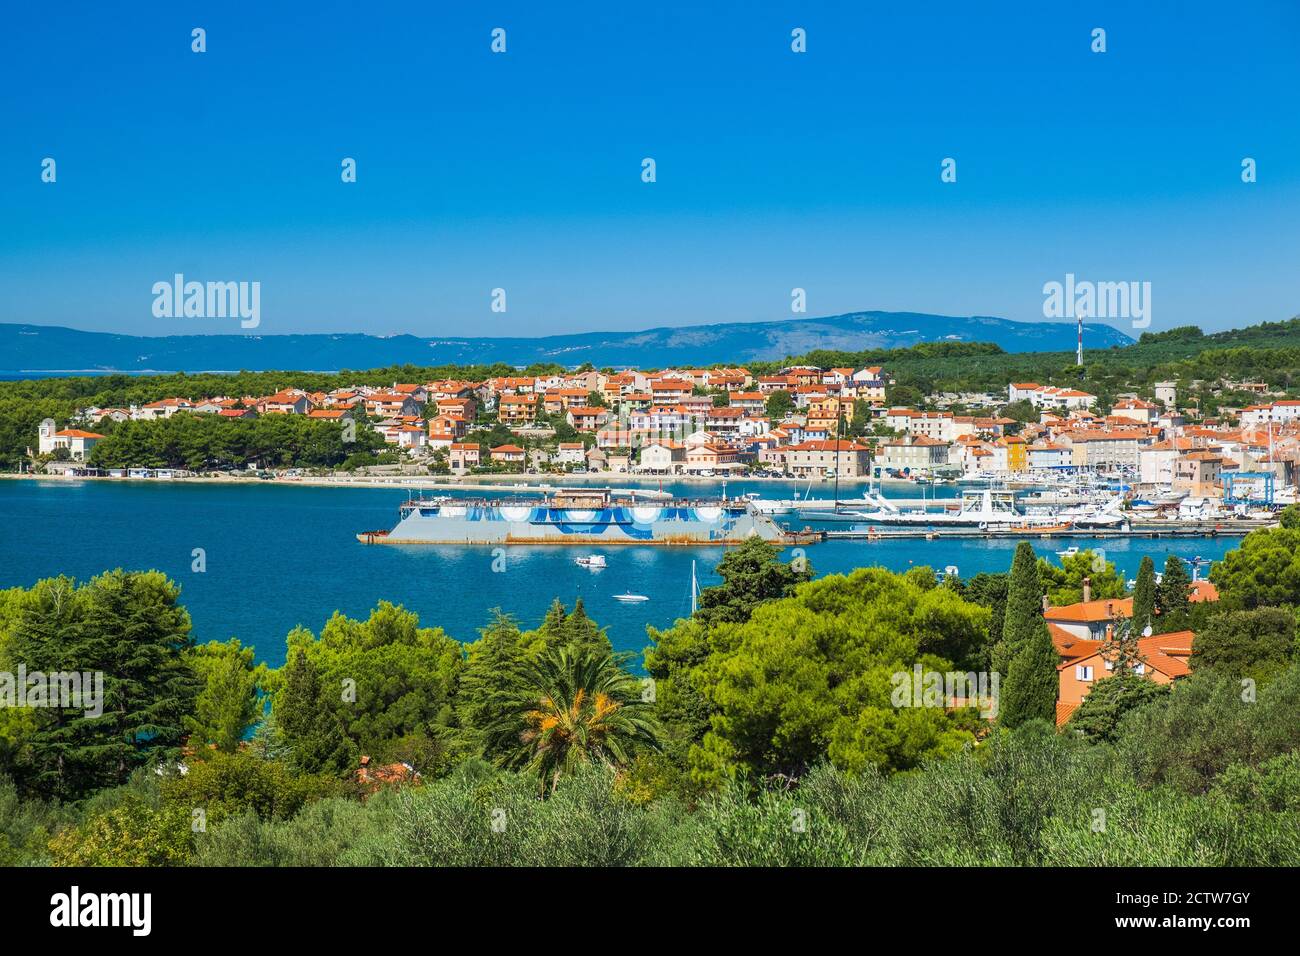 Vue panoramique de la ville de Cres sur l'île de Cres en Croatie, magnifique paysage Adriatique Banque D'Images